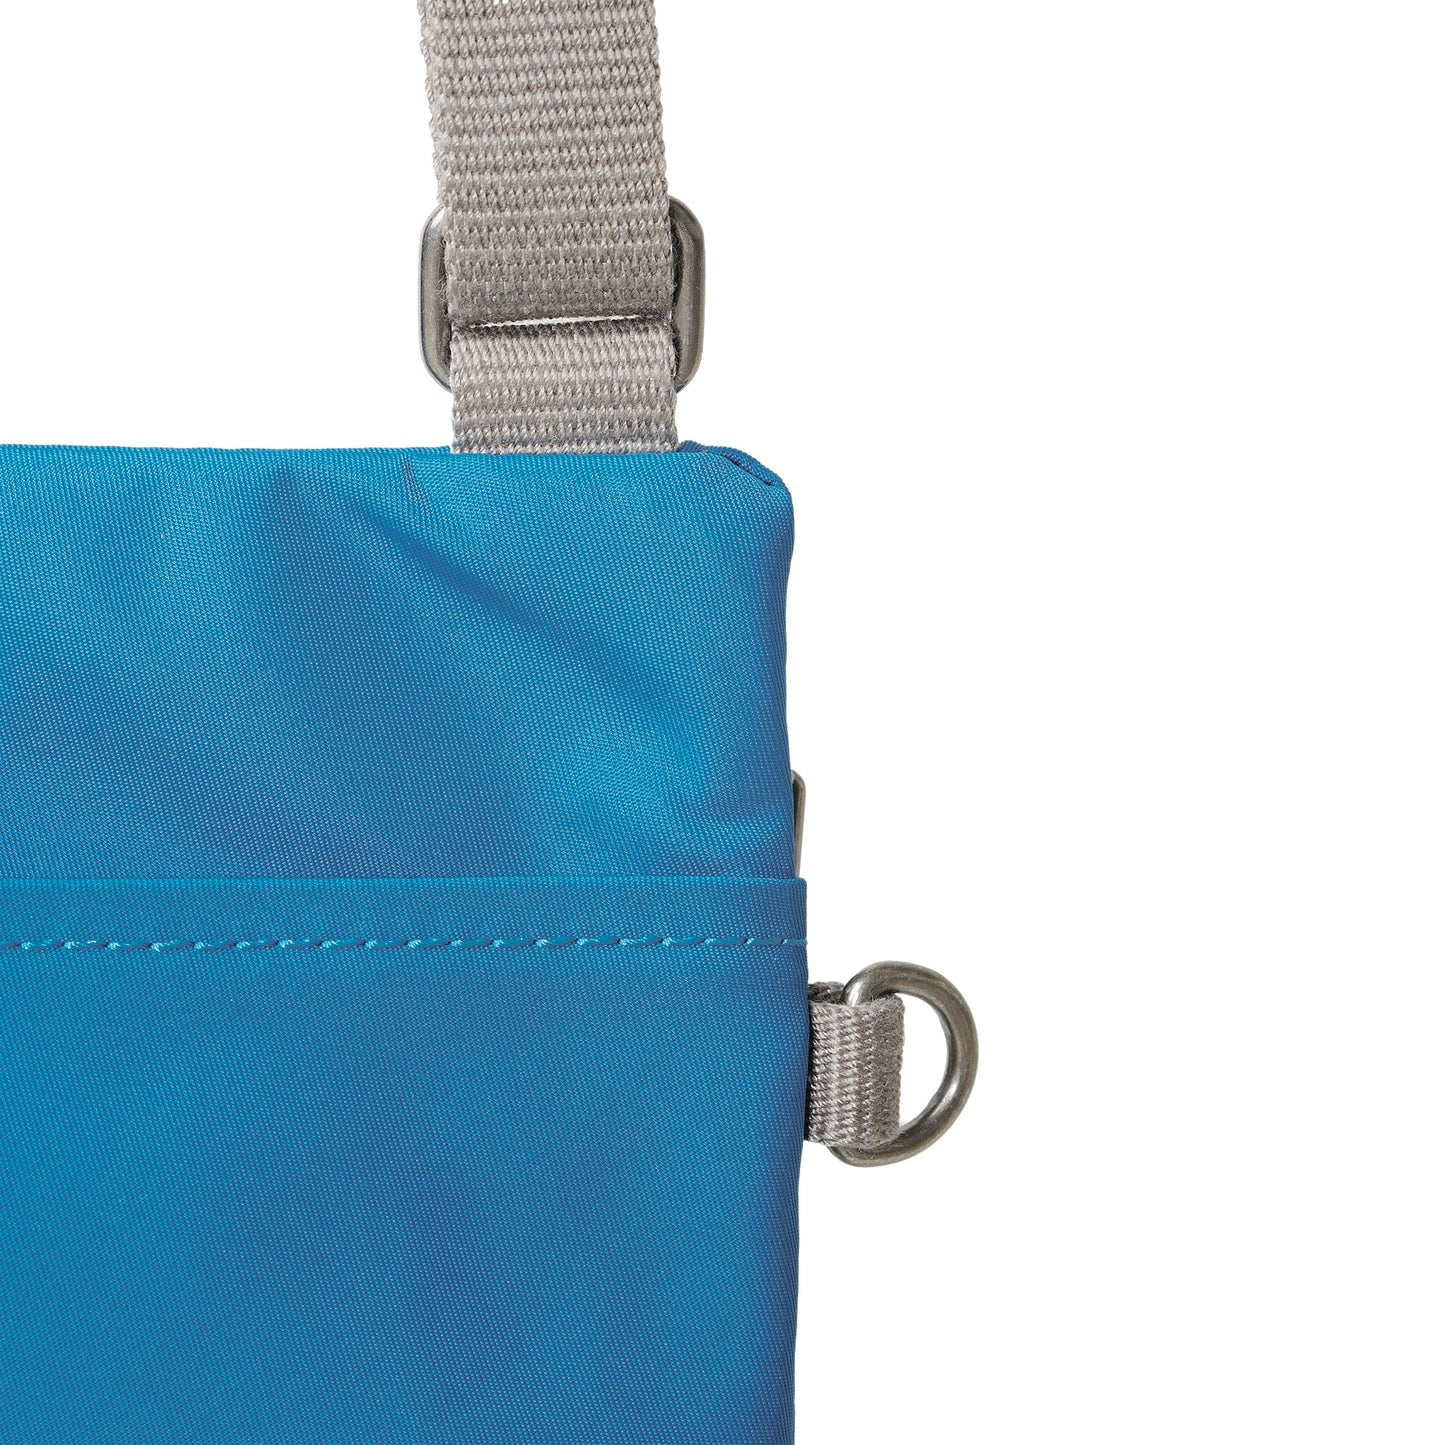 Roka London Chelsea Crossbody Phone Bag, Seaport (Recycled Nylon)